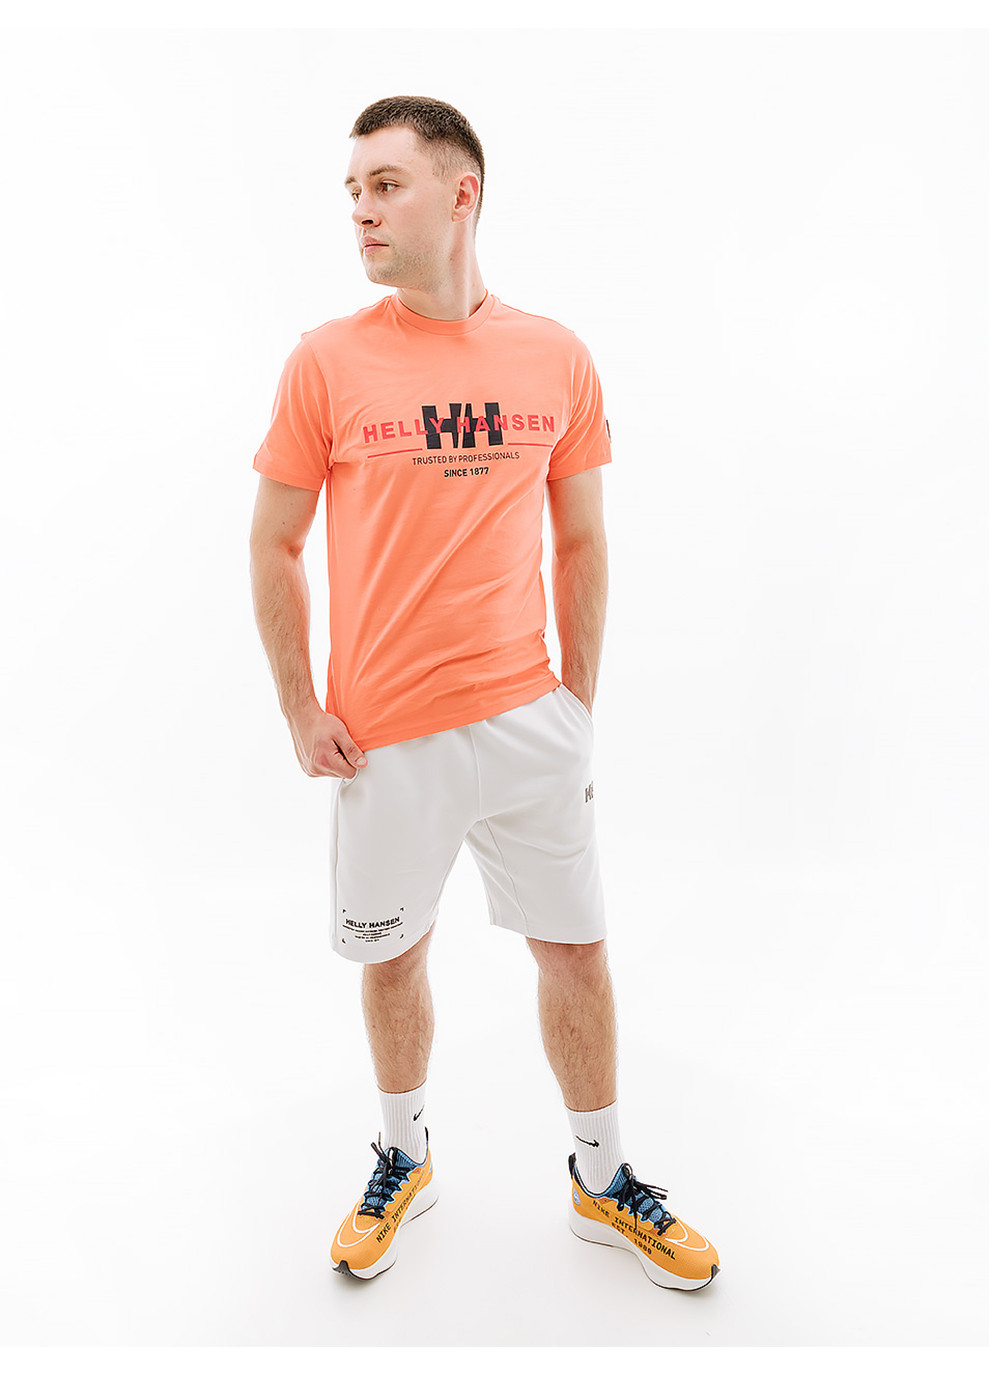 Оранжевая мужская футболка rwb graphic t-shirt оранжевый Helly Hansen